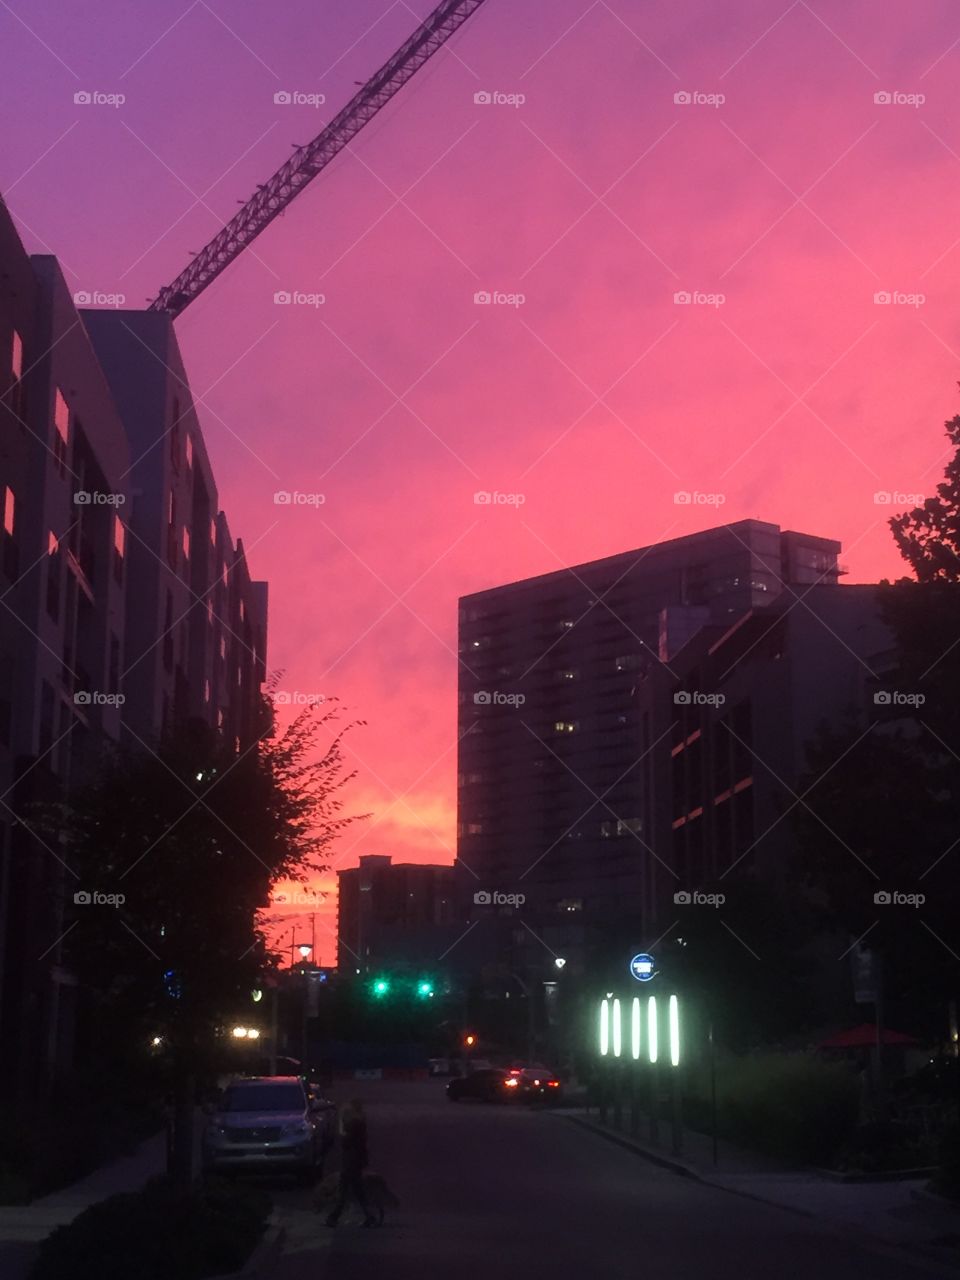 Pink skies